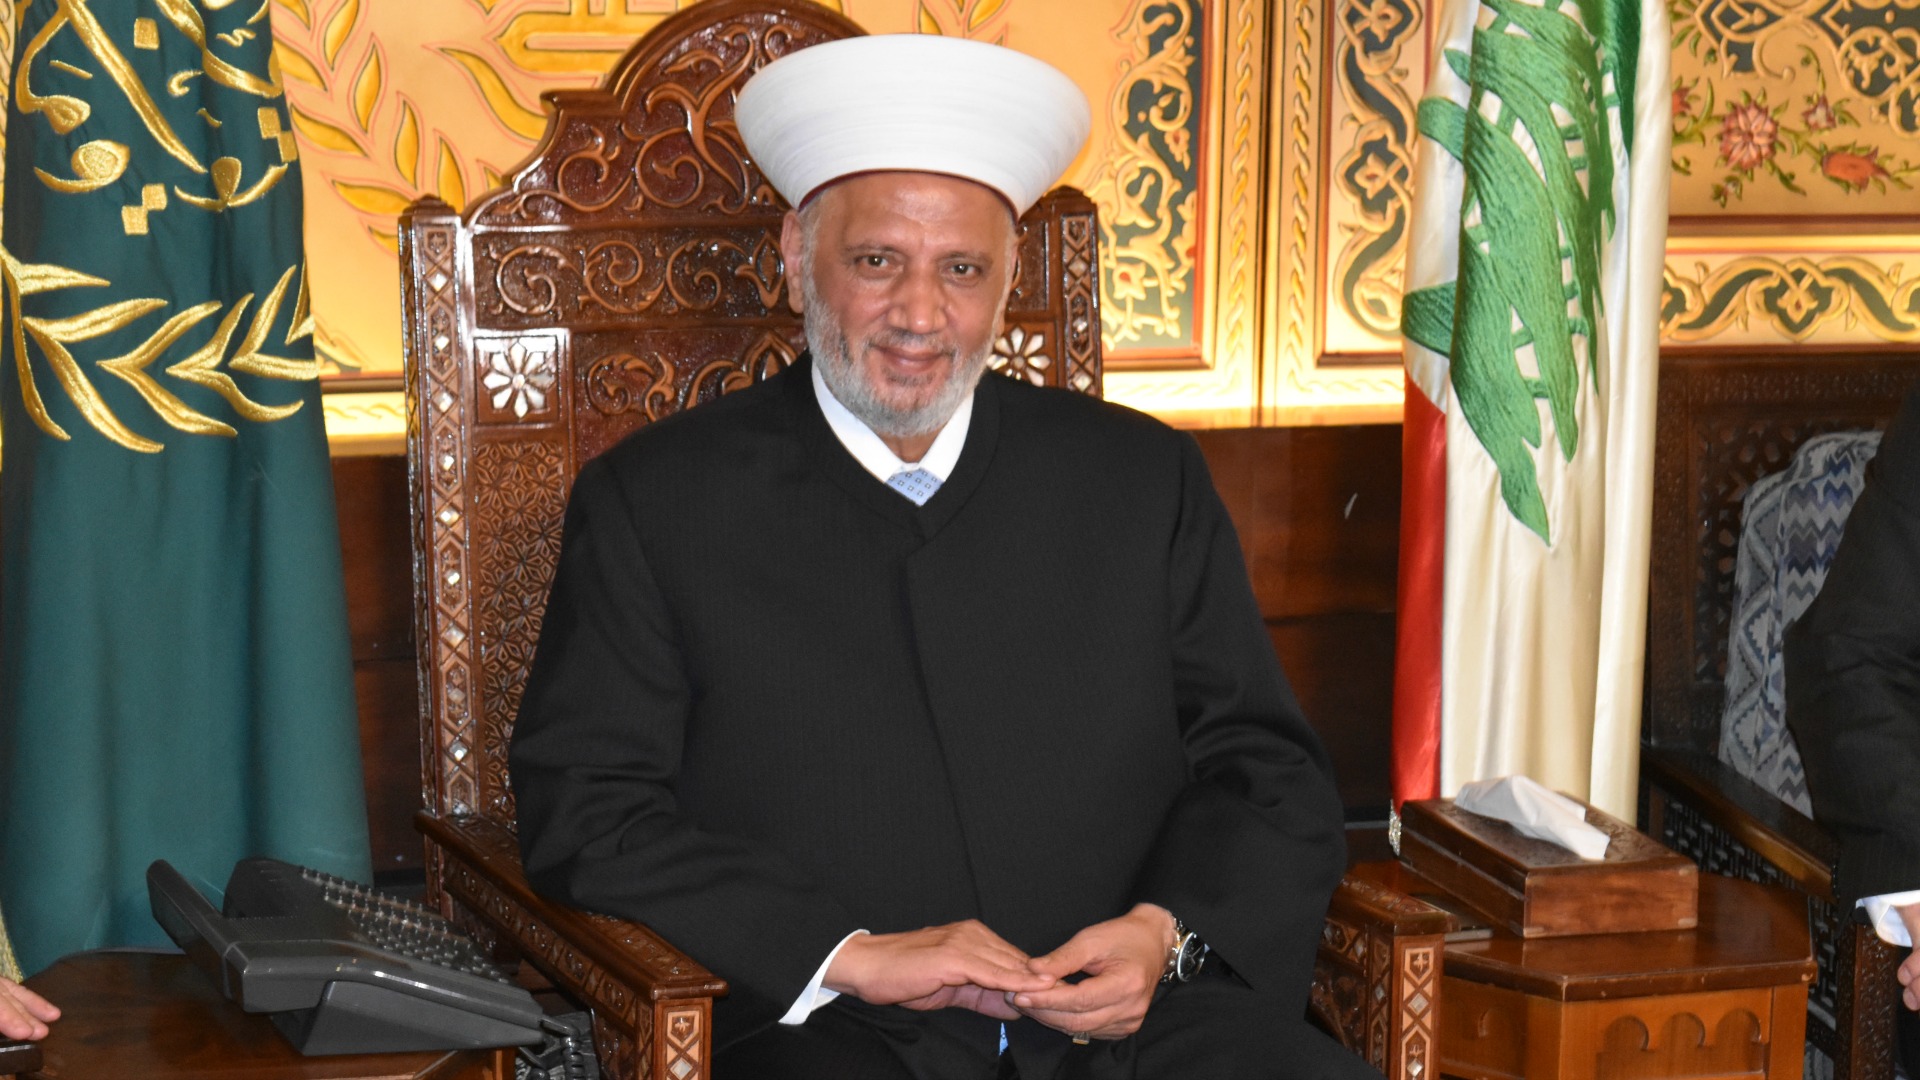 Abdellatif Deriane, mufti sunnite de la République libanaise, réclame la démission des responsables de la catastrophe du 4 août 2020 | © Jacques Berset 